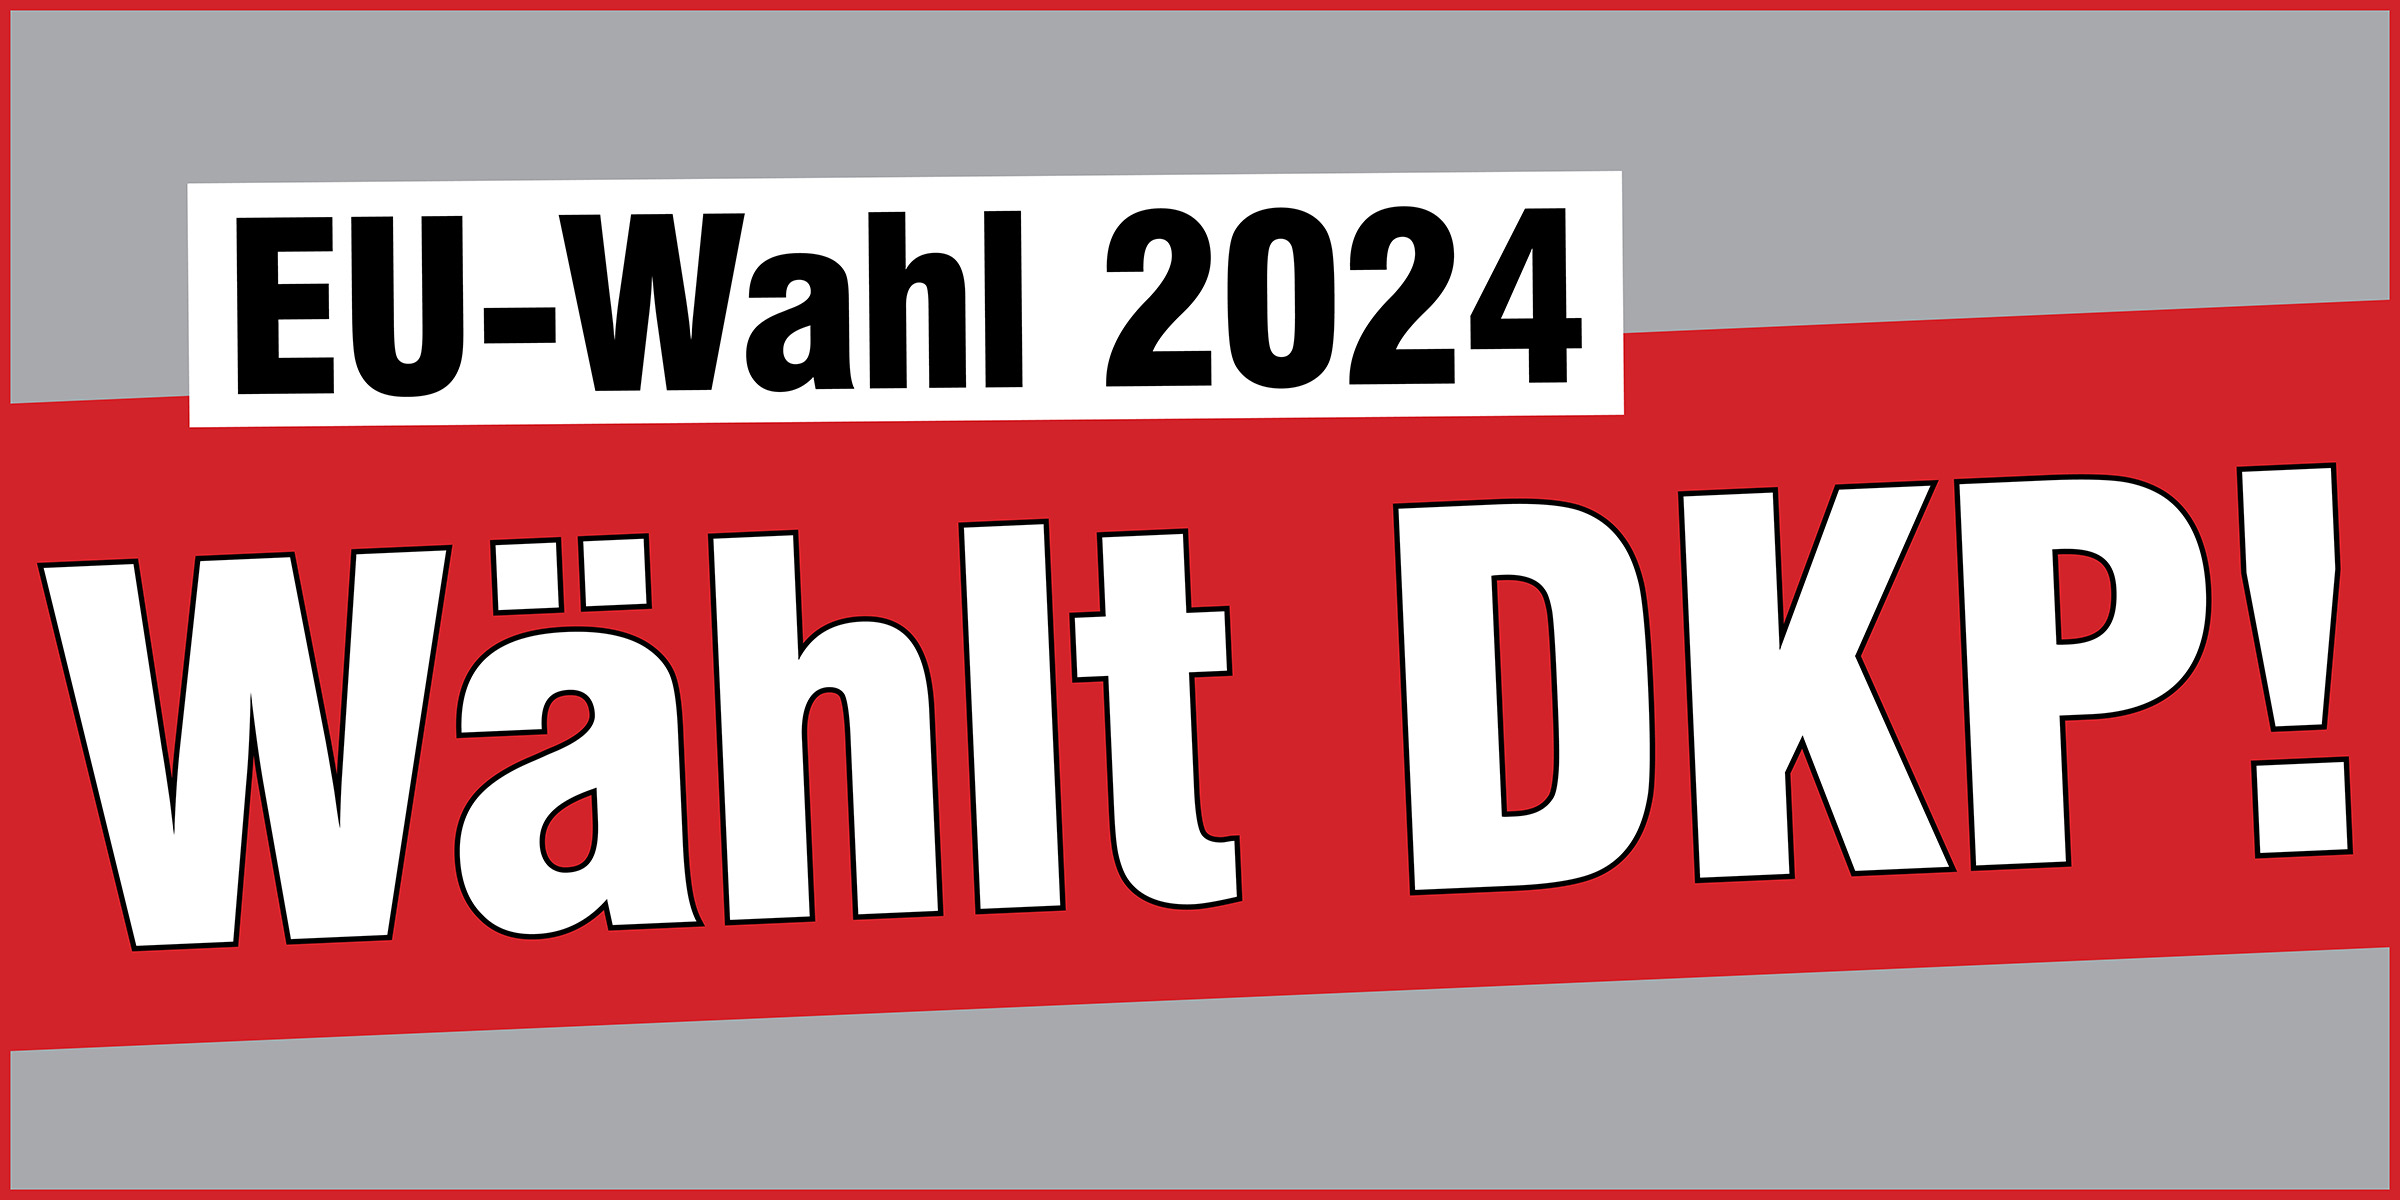 Wählt DKP!  |  31 במאי 2024